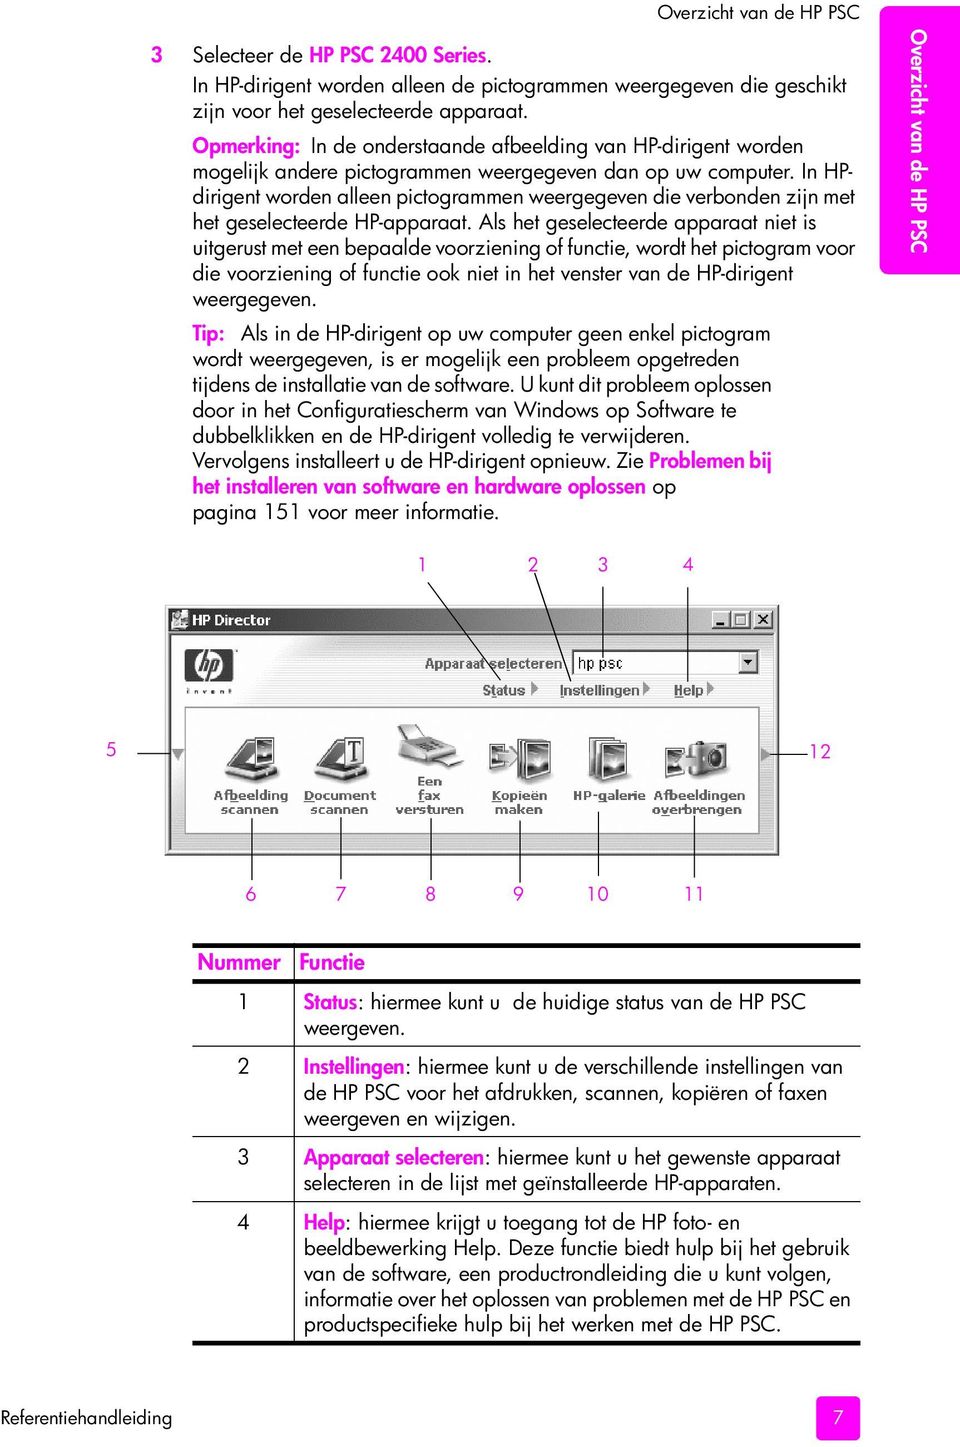 In HPdirigent worden alleen pictogrammen weergegeven die verbonden zijn met het geselecteerde HP-apparaat.